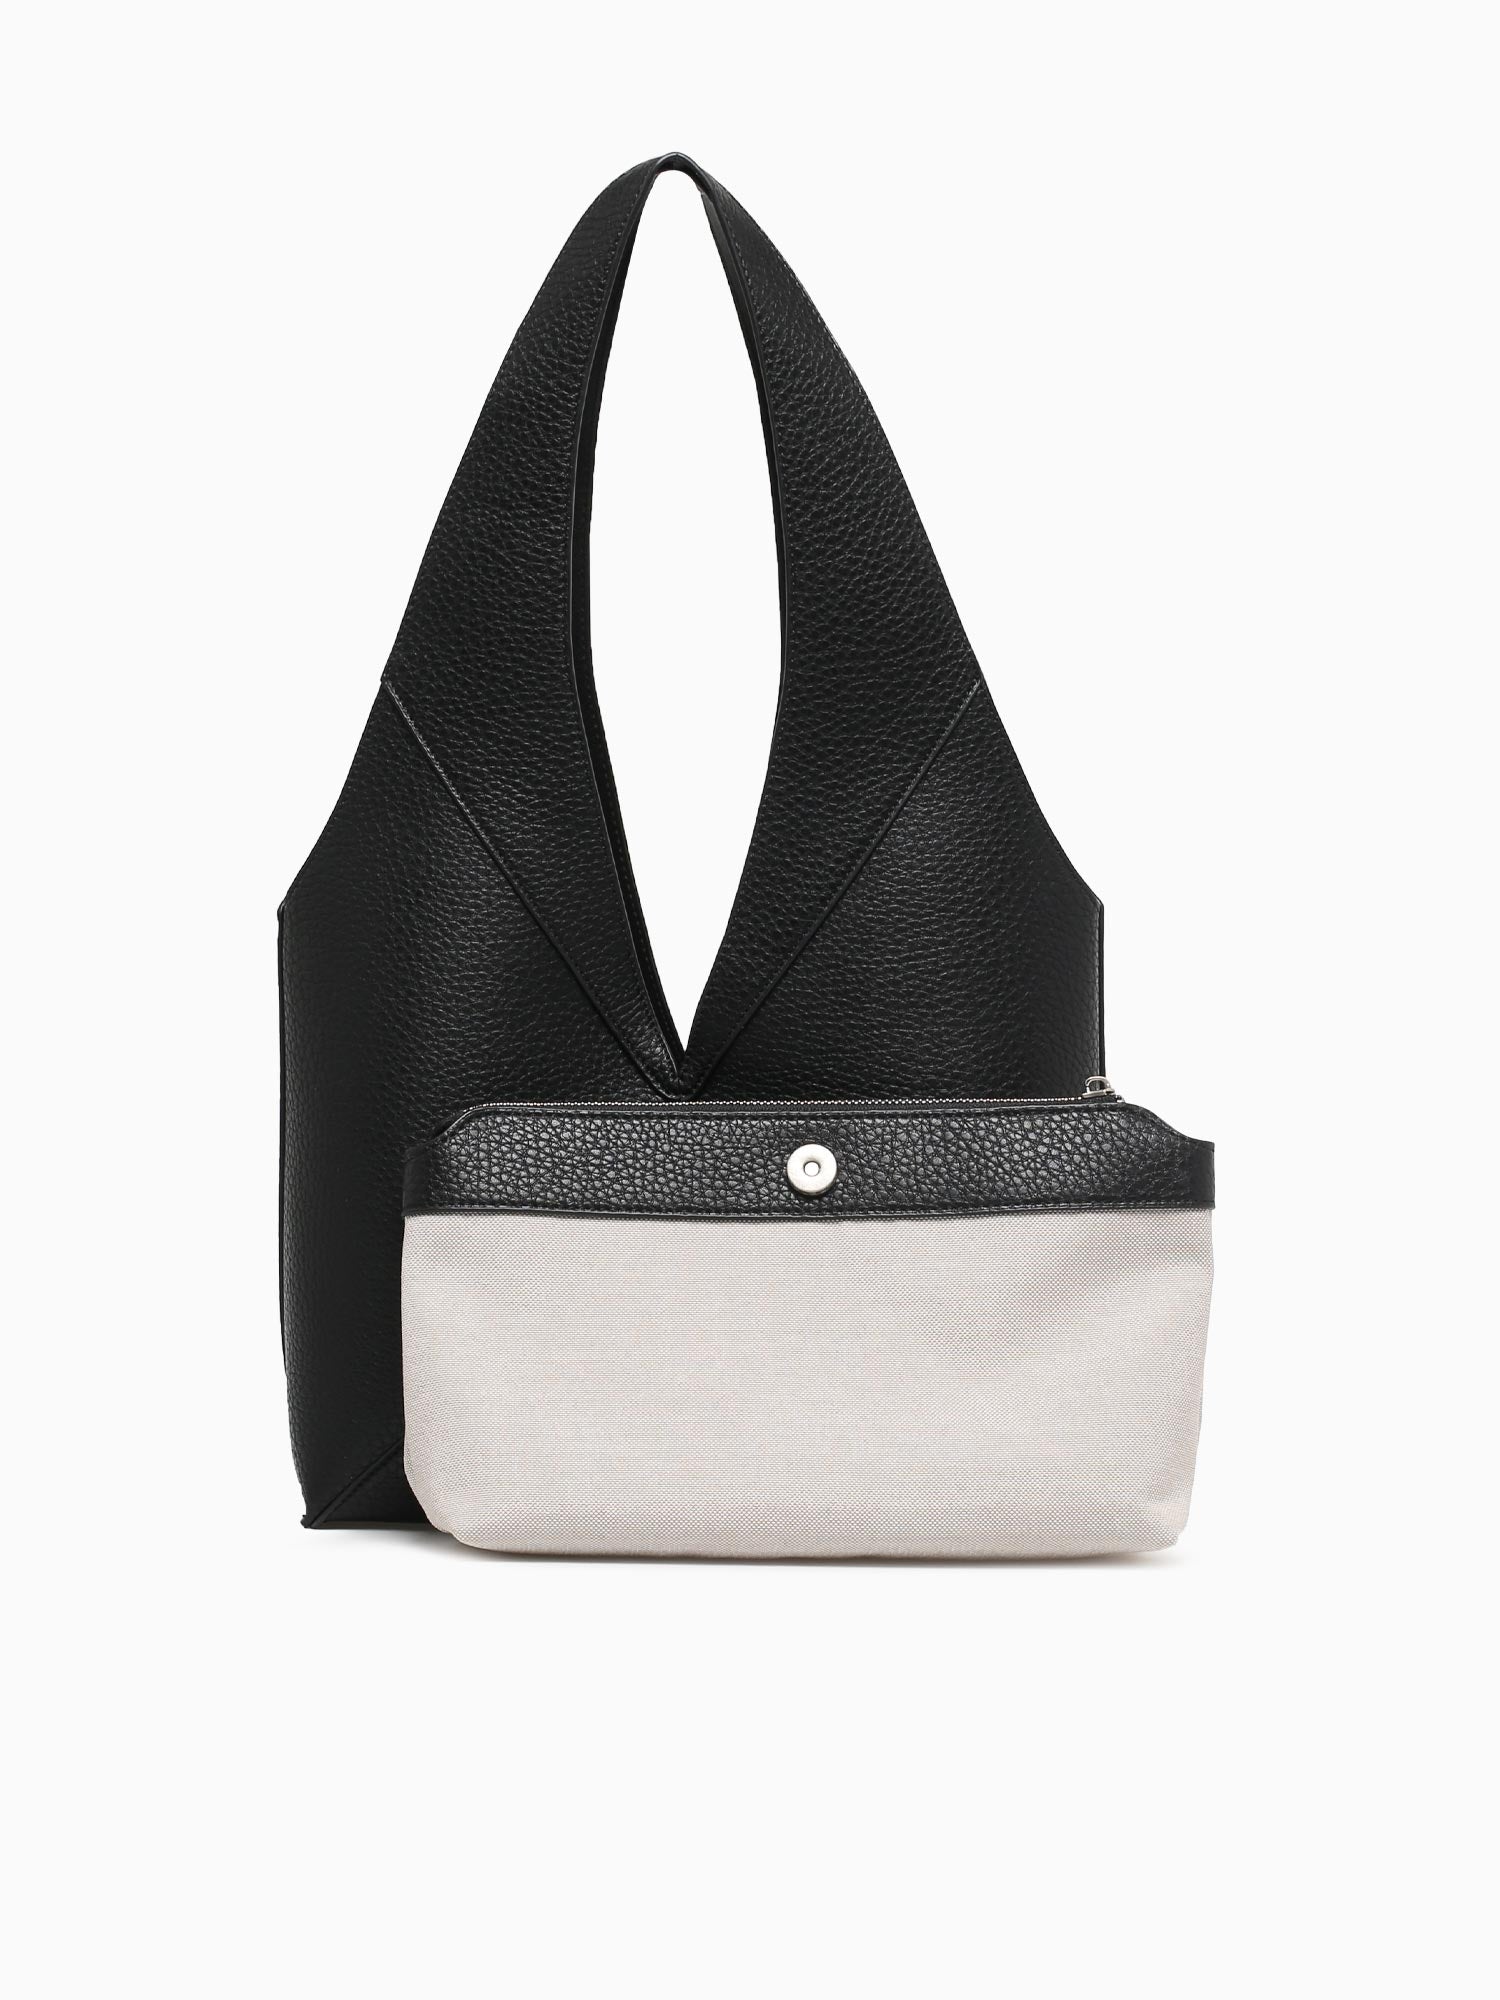 Corsico shoulder bag Helena Black – Adax Shop